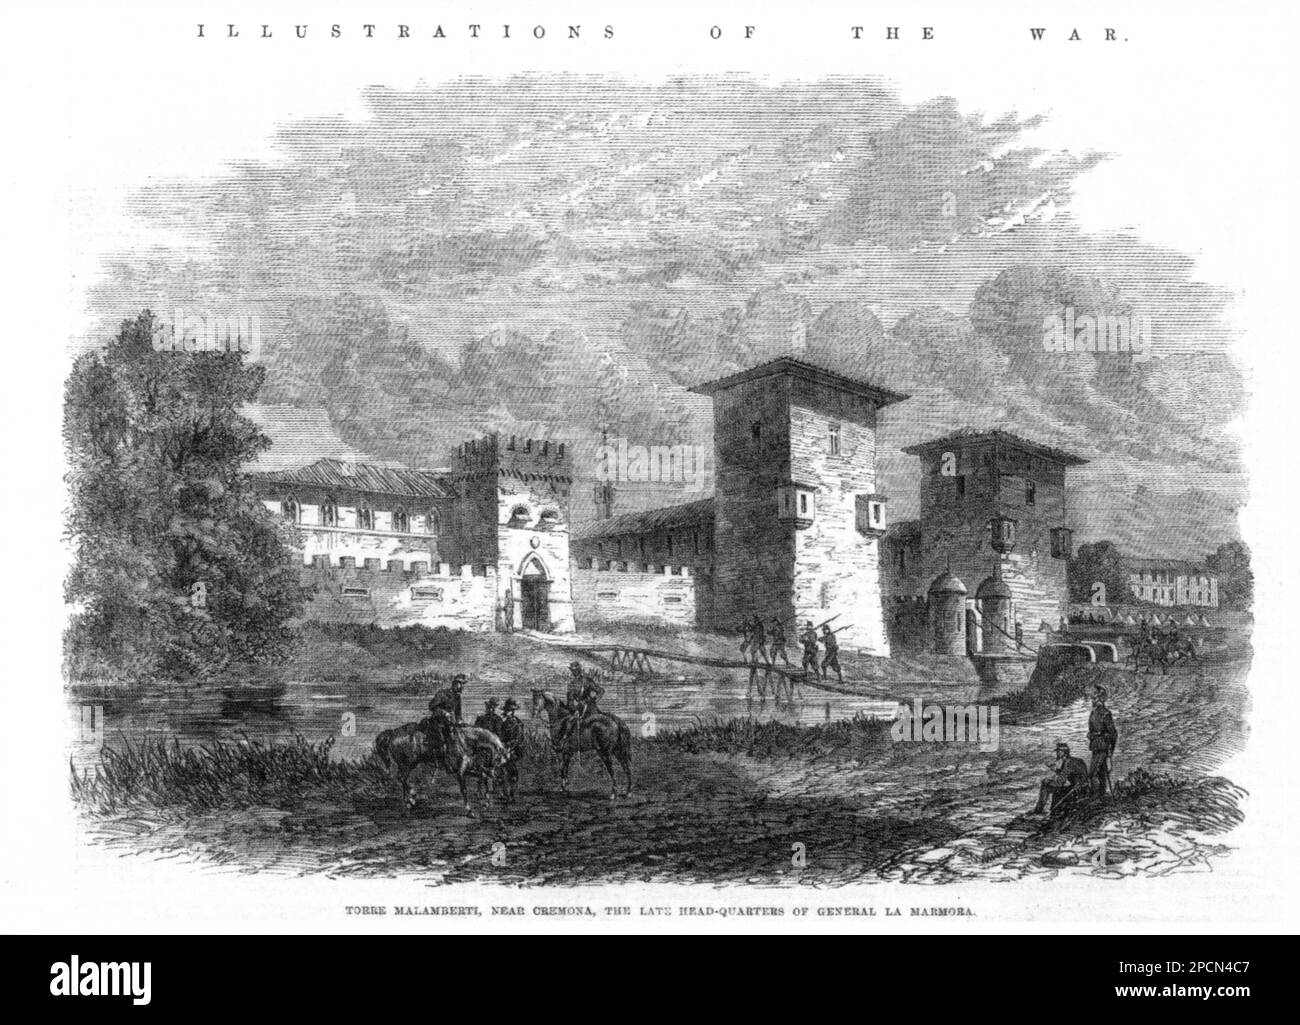 1860 ca , Torre de Picenardi , CREMONA , ITALIA : il castello del marchese ITALIANO SOMMI PICENARDI ( ex Torre Malamberti ) nei pressi di Cremona, quando fu il tardo quartiere generale italiano LA MARMORA . Illustrazione della RIVISTA britannica ILLUSTRAZIONE DELLA GUERRA - GUERRA D' INDIPENDENZA dall'AUSTRIA - nobiltà italiana - nobiltà - Marchese - incisione - illustrazione - castello - torre ----- Archivio GBB Foto Stock